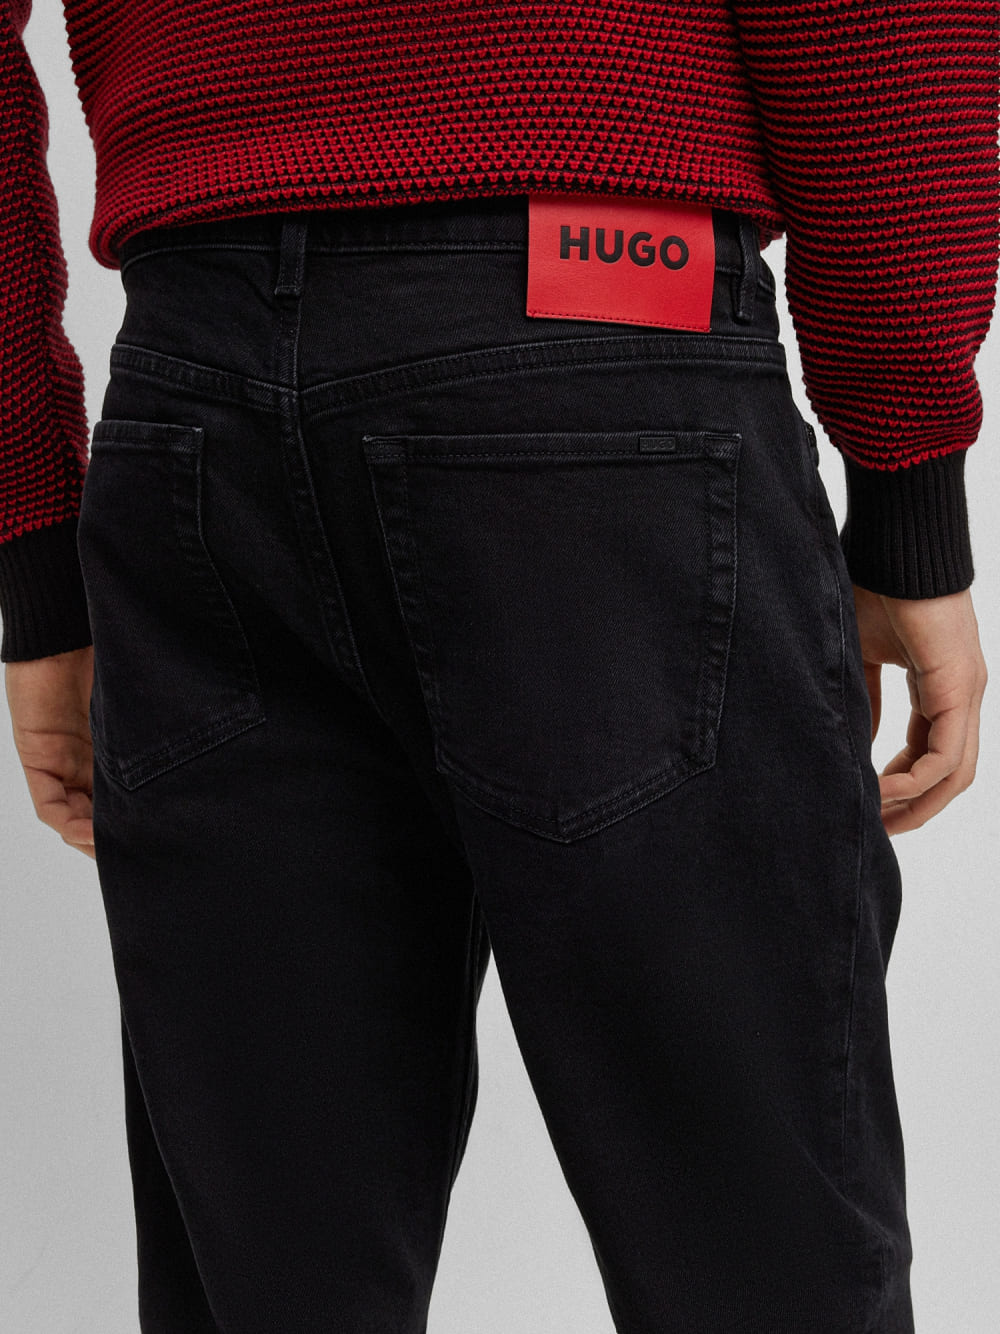 Jean Hugo Black Jeans